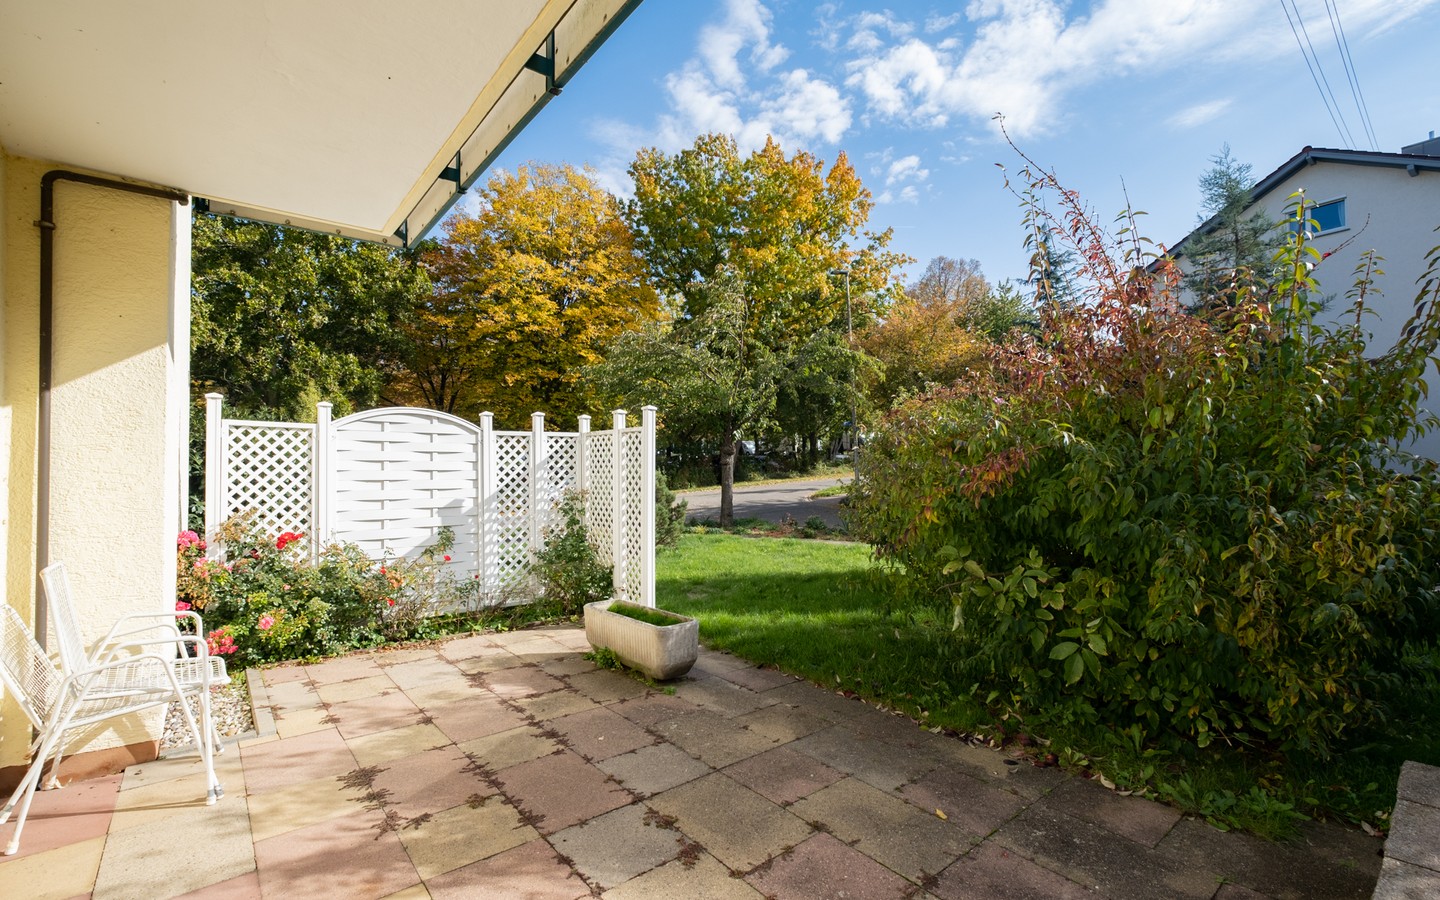 Terrasse - Direkt am Kurpark in Bad Rappenau: Freistehendes Wohnhaus in ruhiger Wohnlage mit herrlichem Garten